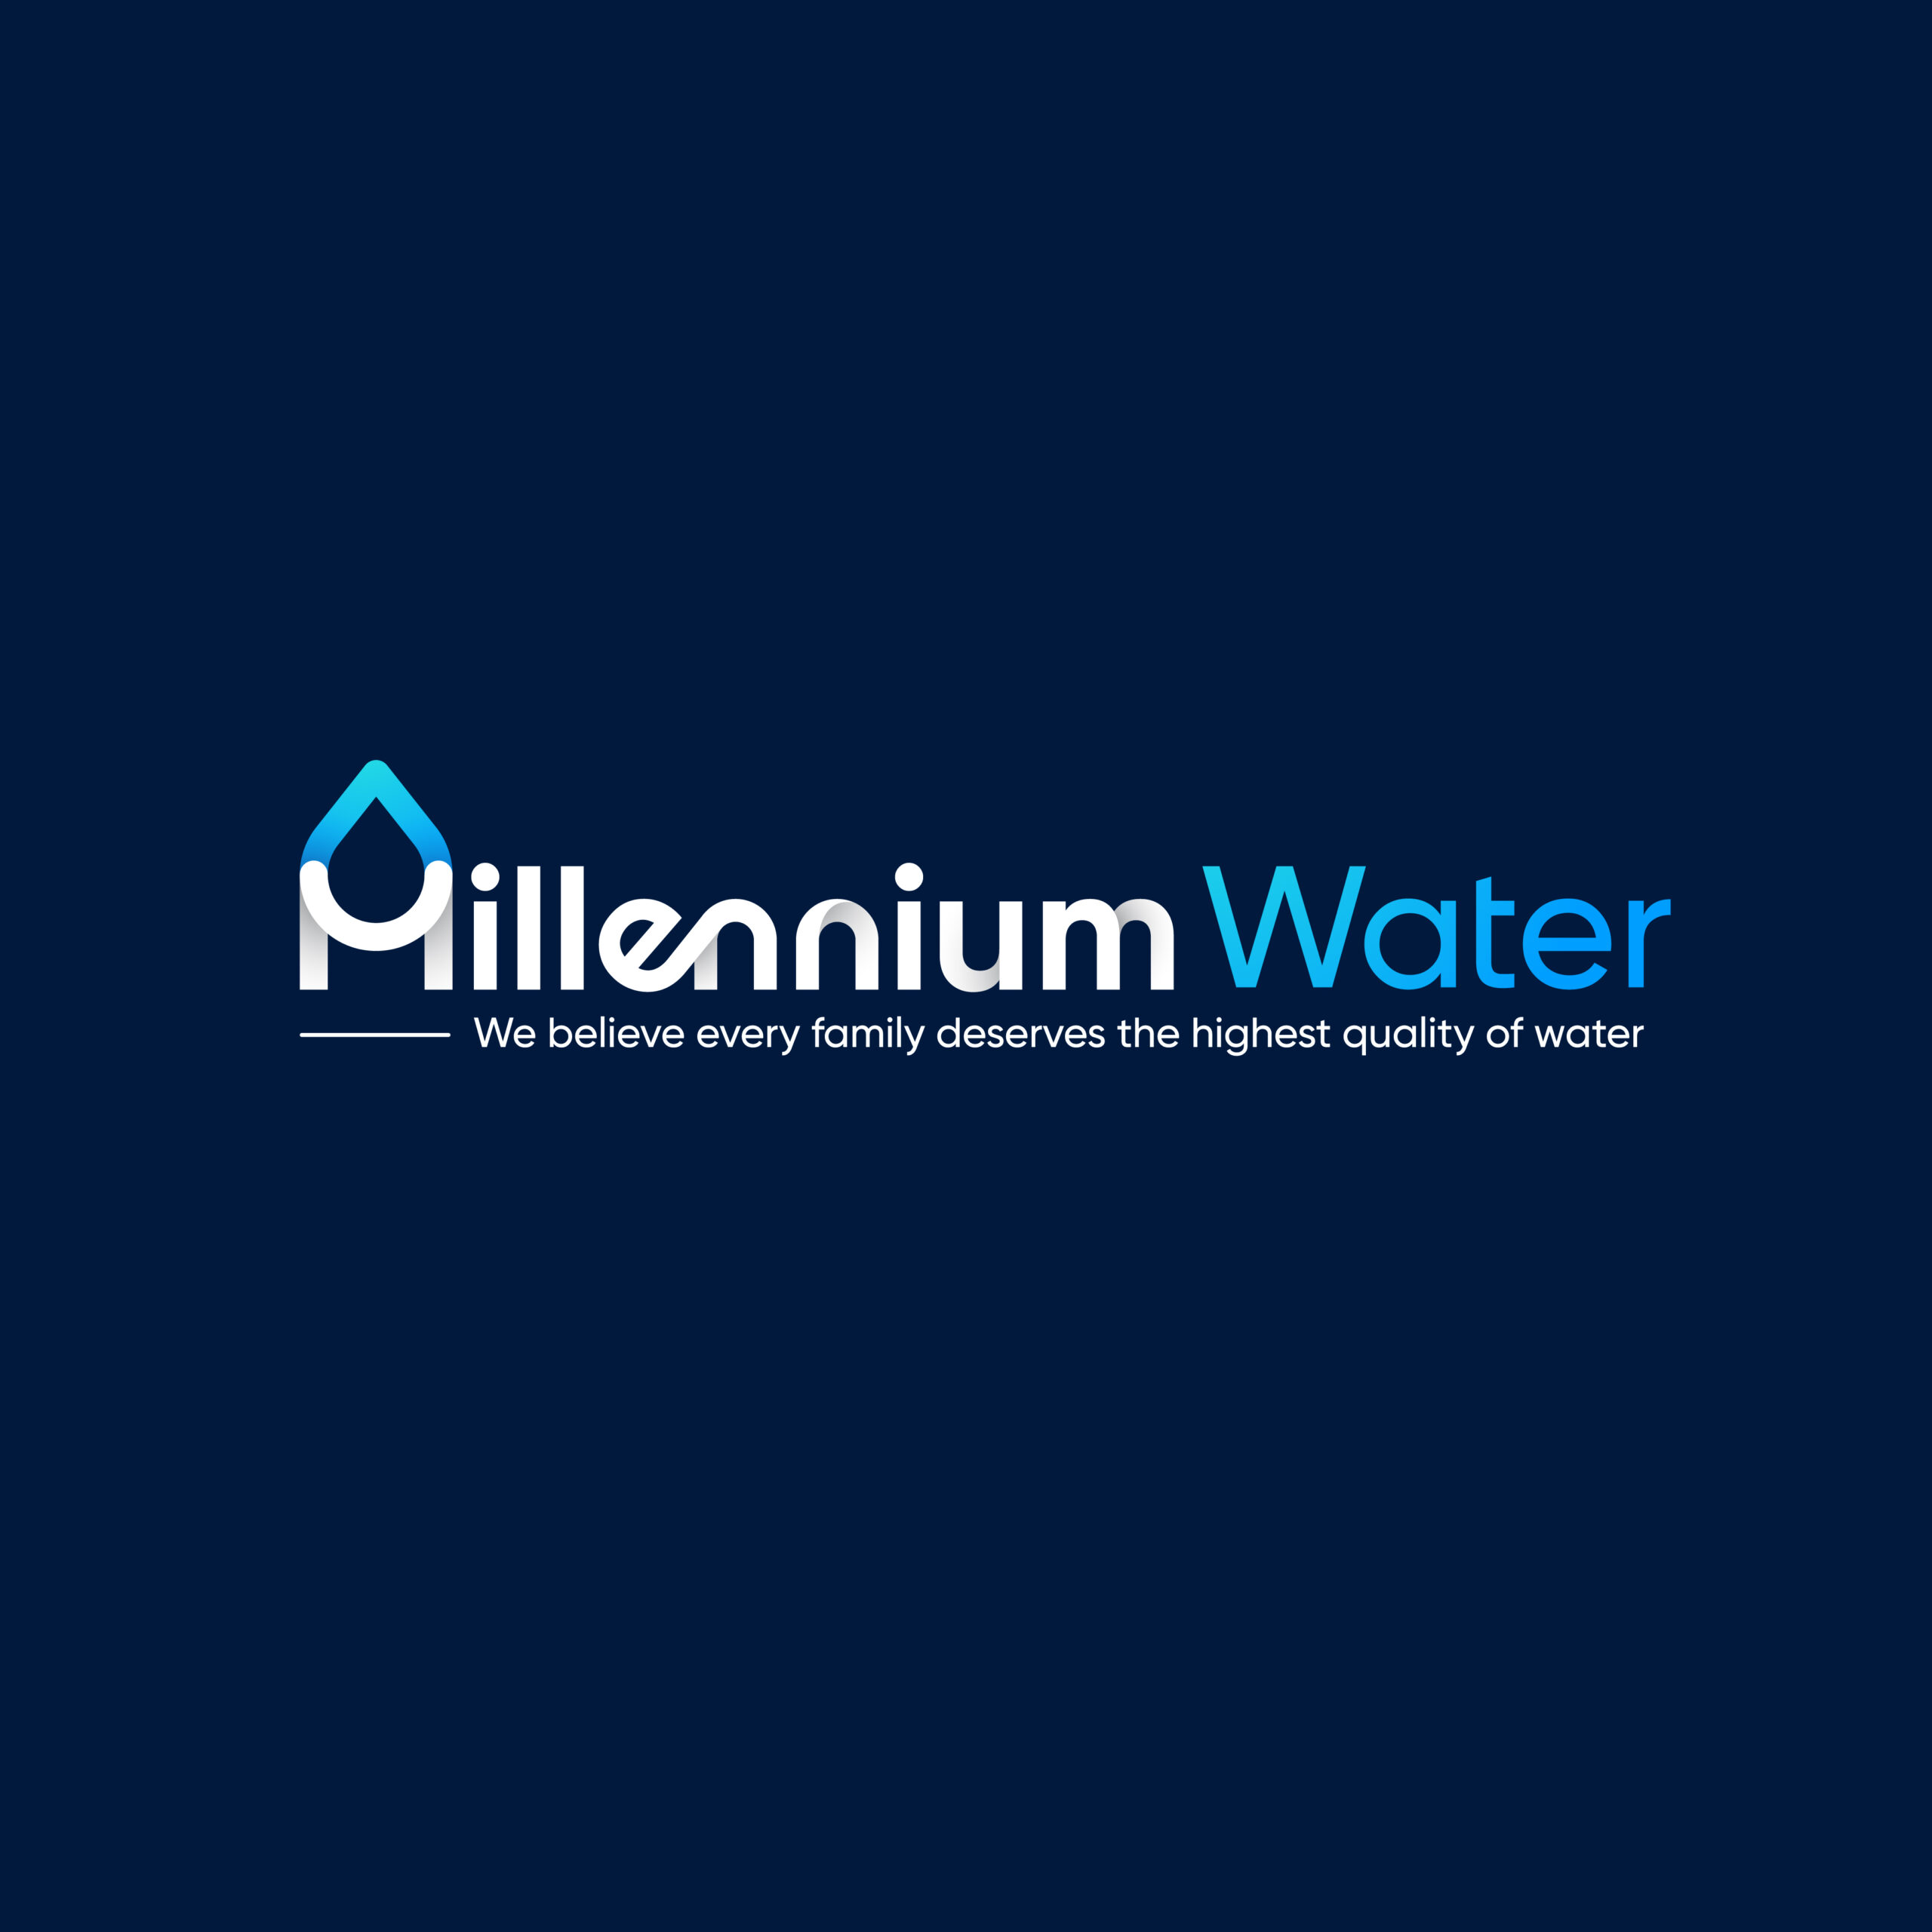 Millennium Water